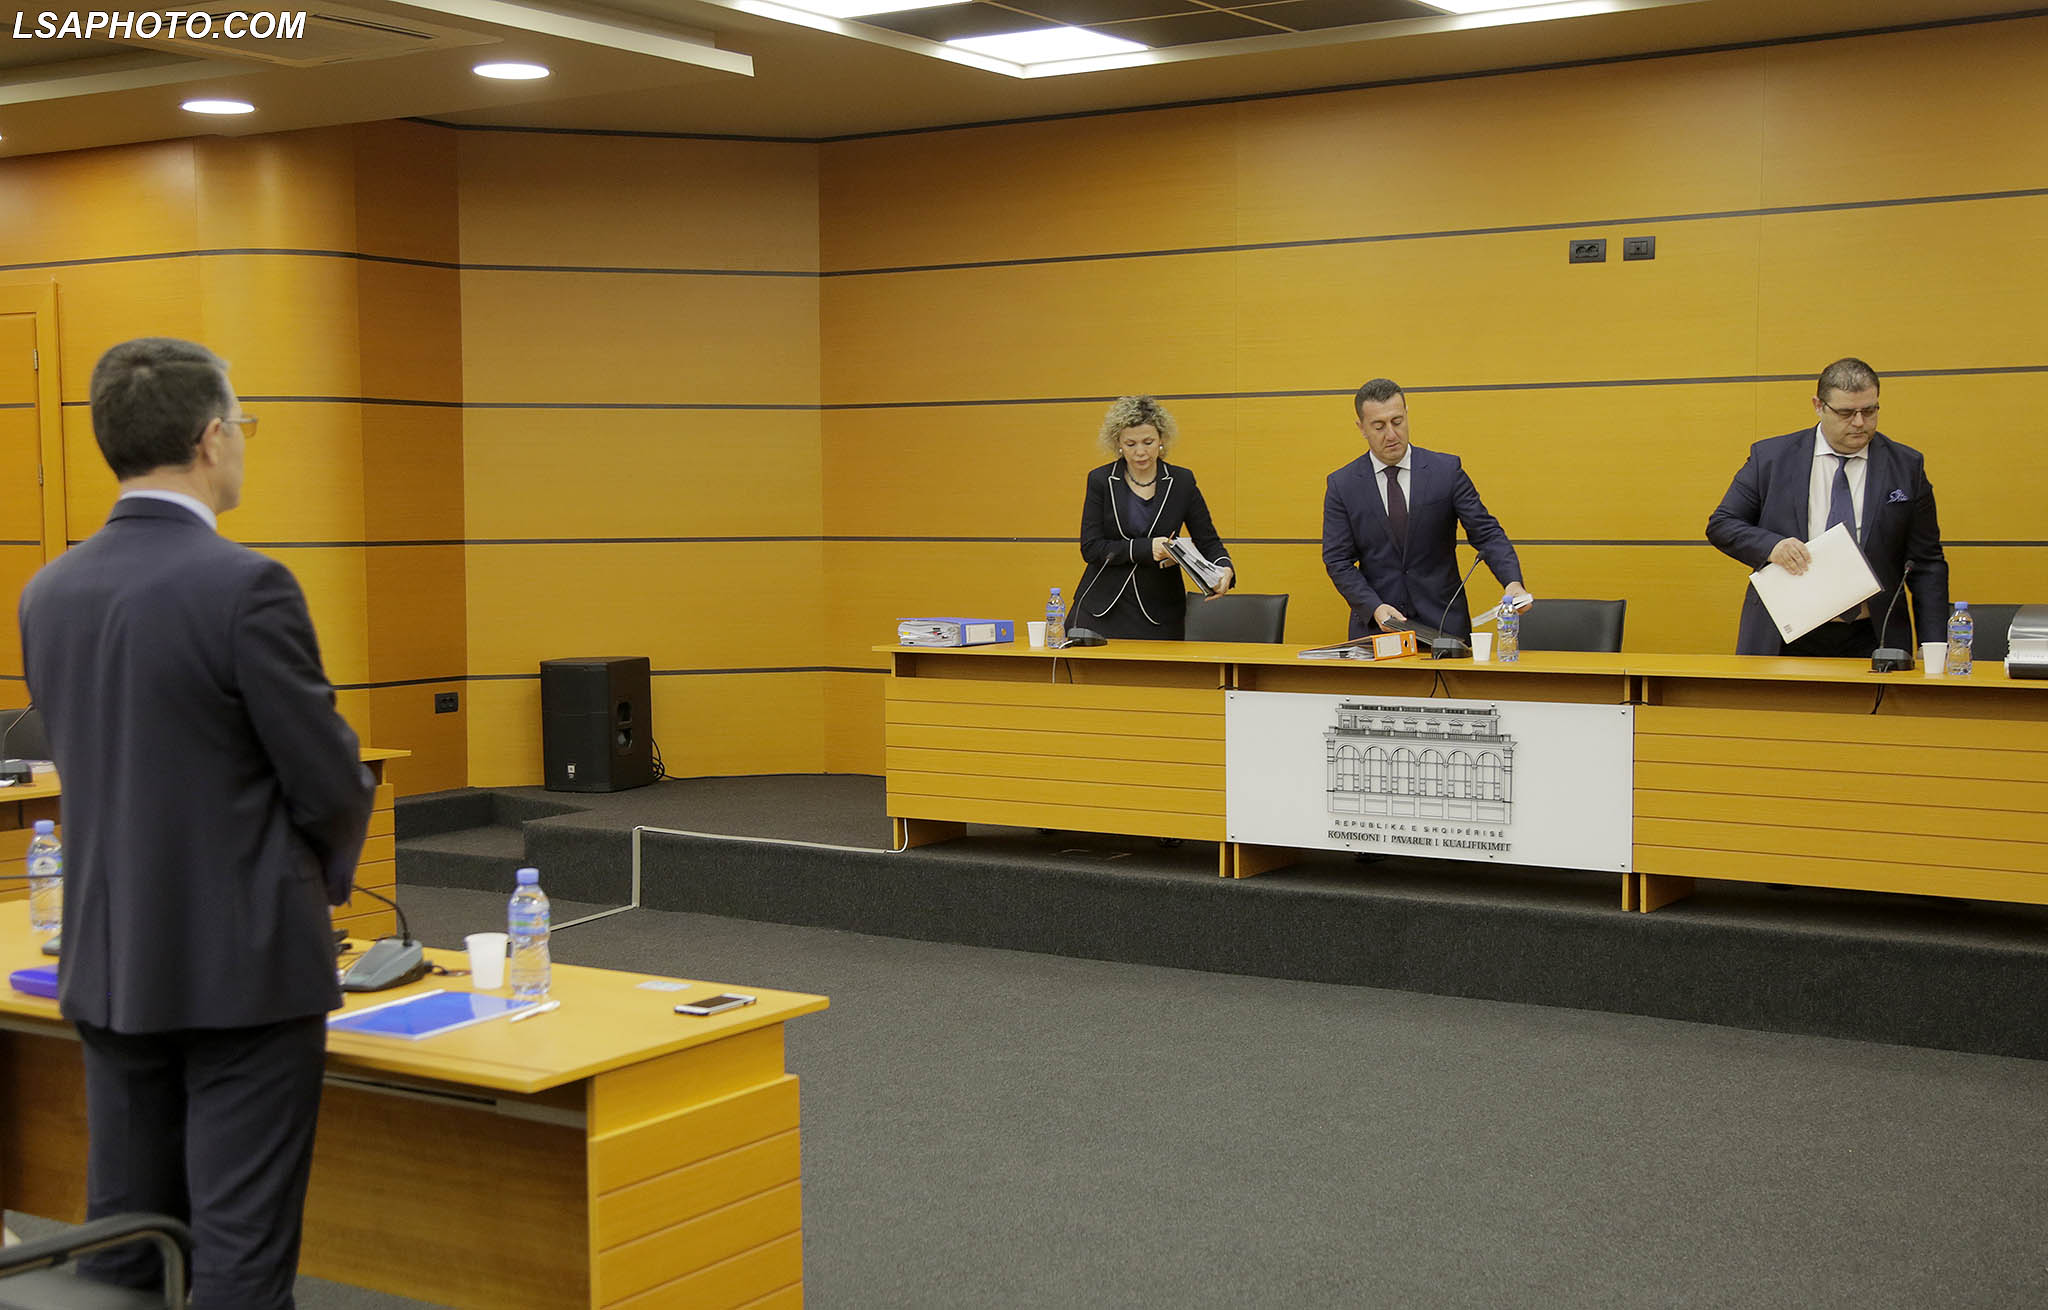 Valbona Sanxhaktari, Olsi Komici, Roland Ilia, gjatë një seance të Komisionit të Pavarur te Kualifikimit. Foto: Malton Dibra/LSA